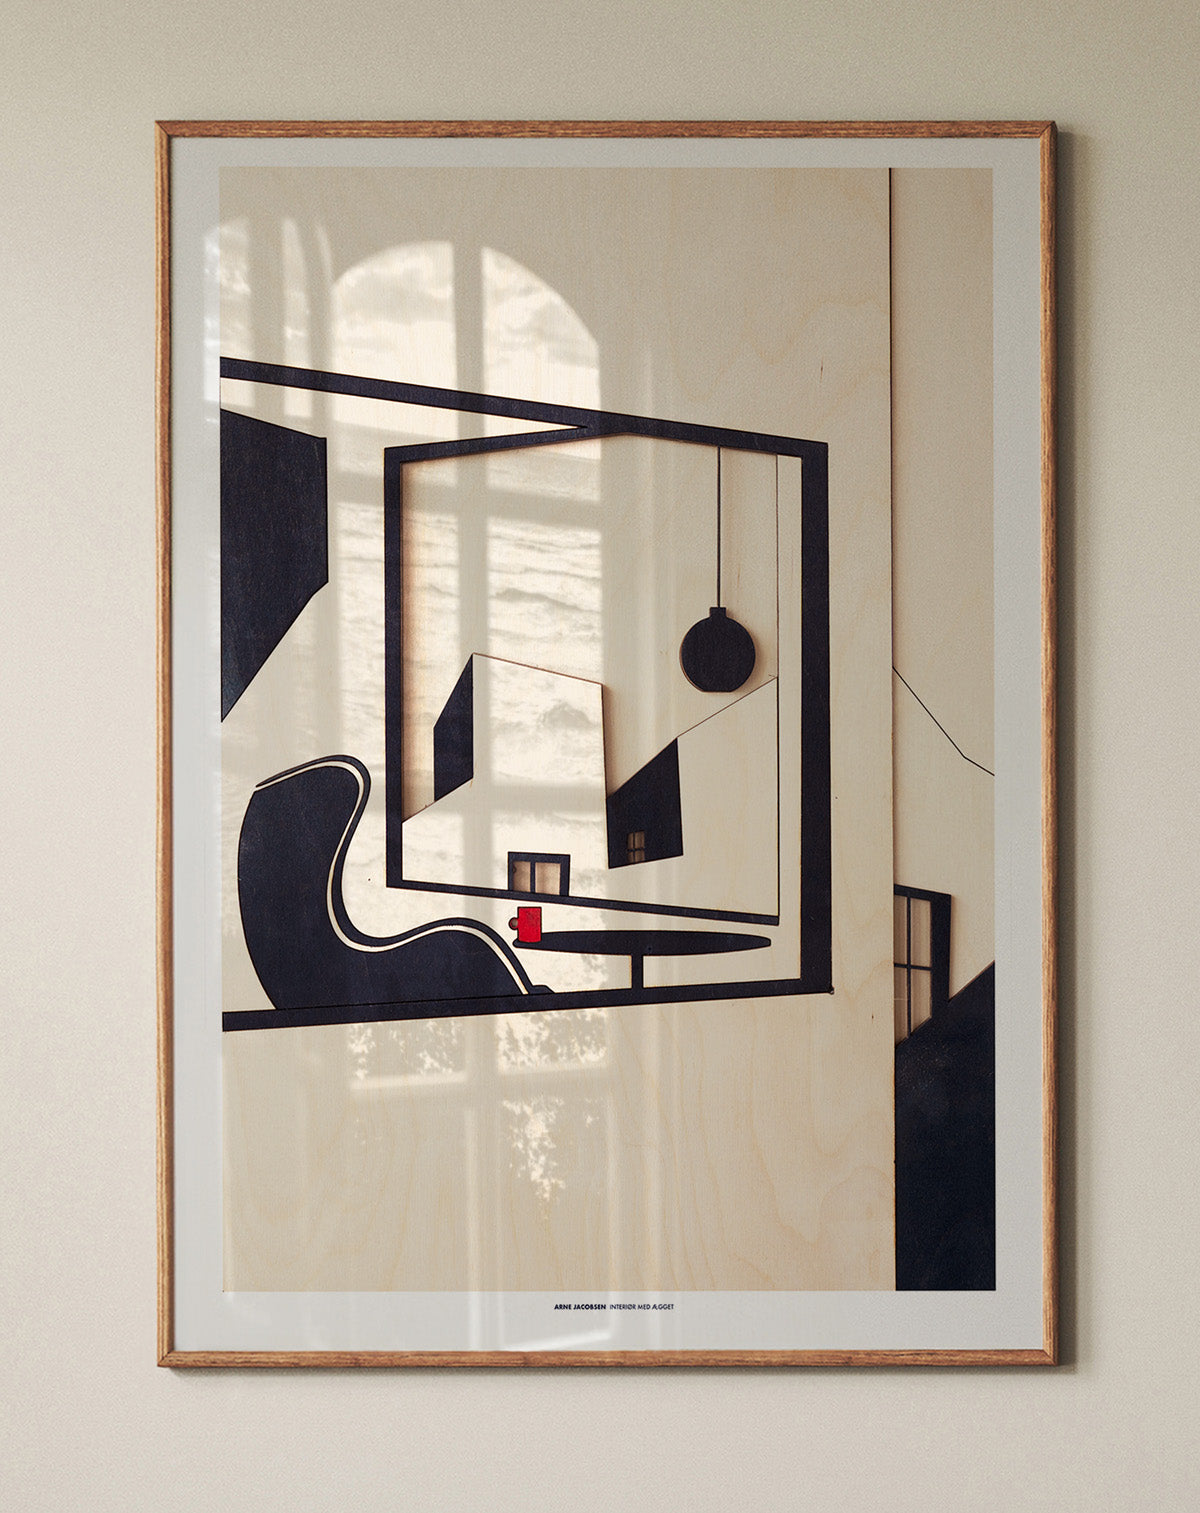 The Egg - Arne Jacobsen I ARTPRINT